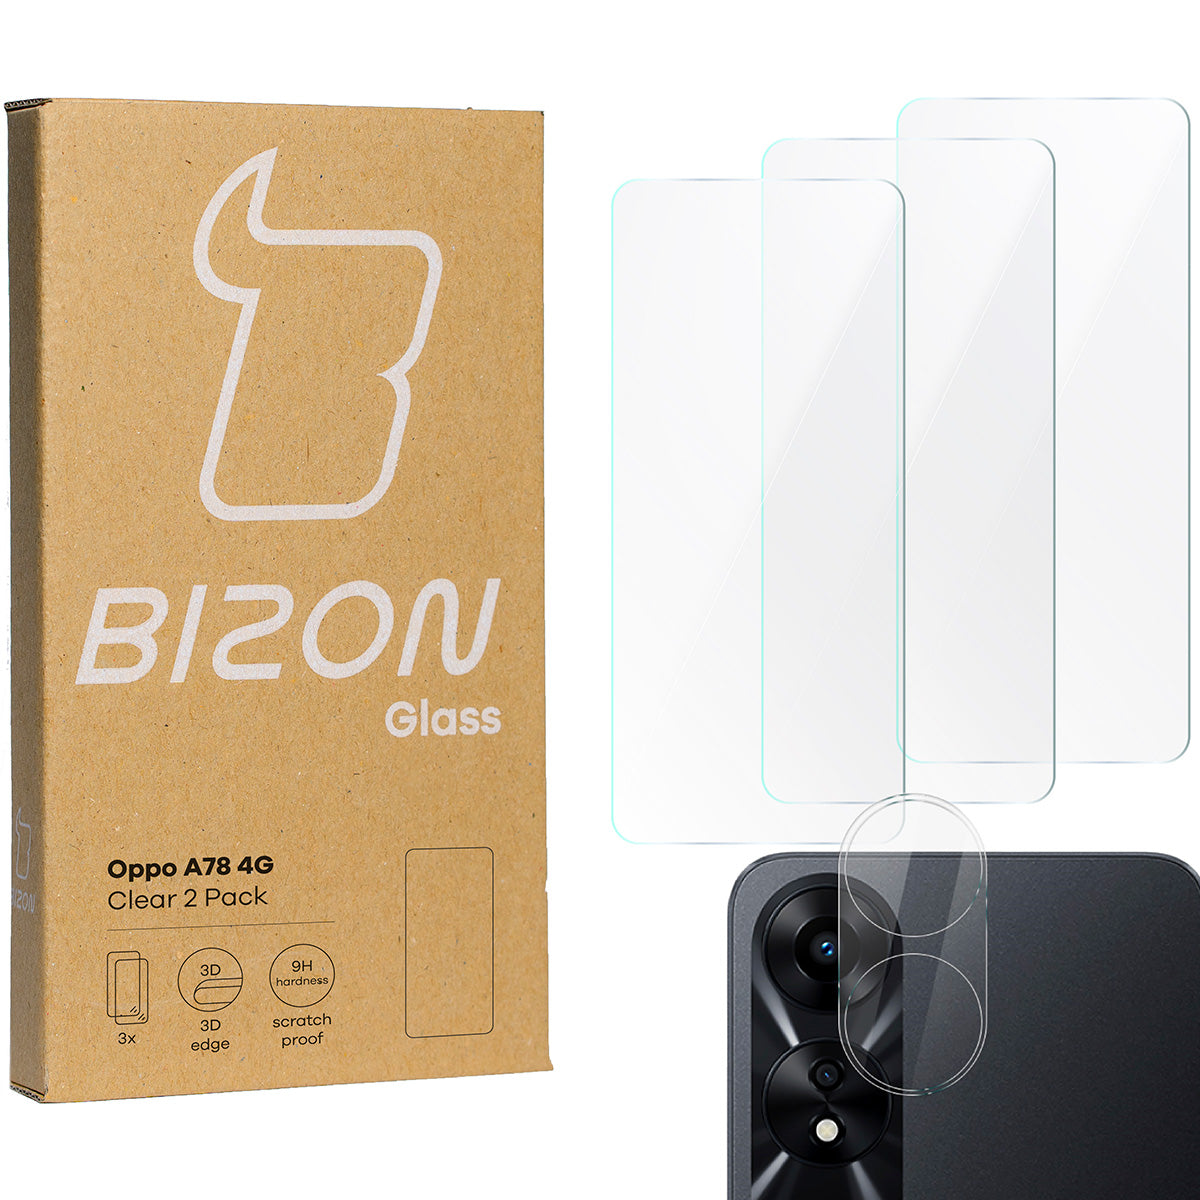 Gehärtetes Glas Bizon Glass Clear 2 Pack - 3 Stück + Kameraschutz, Oppo A78 4G